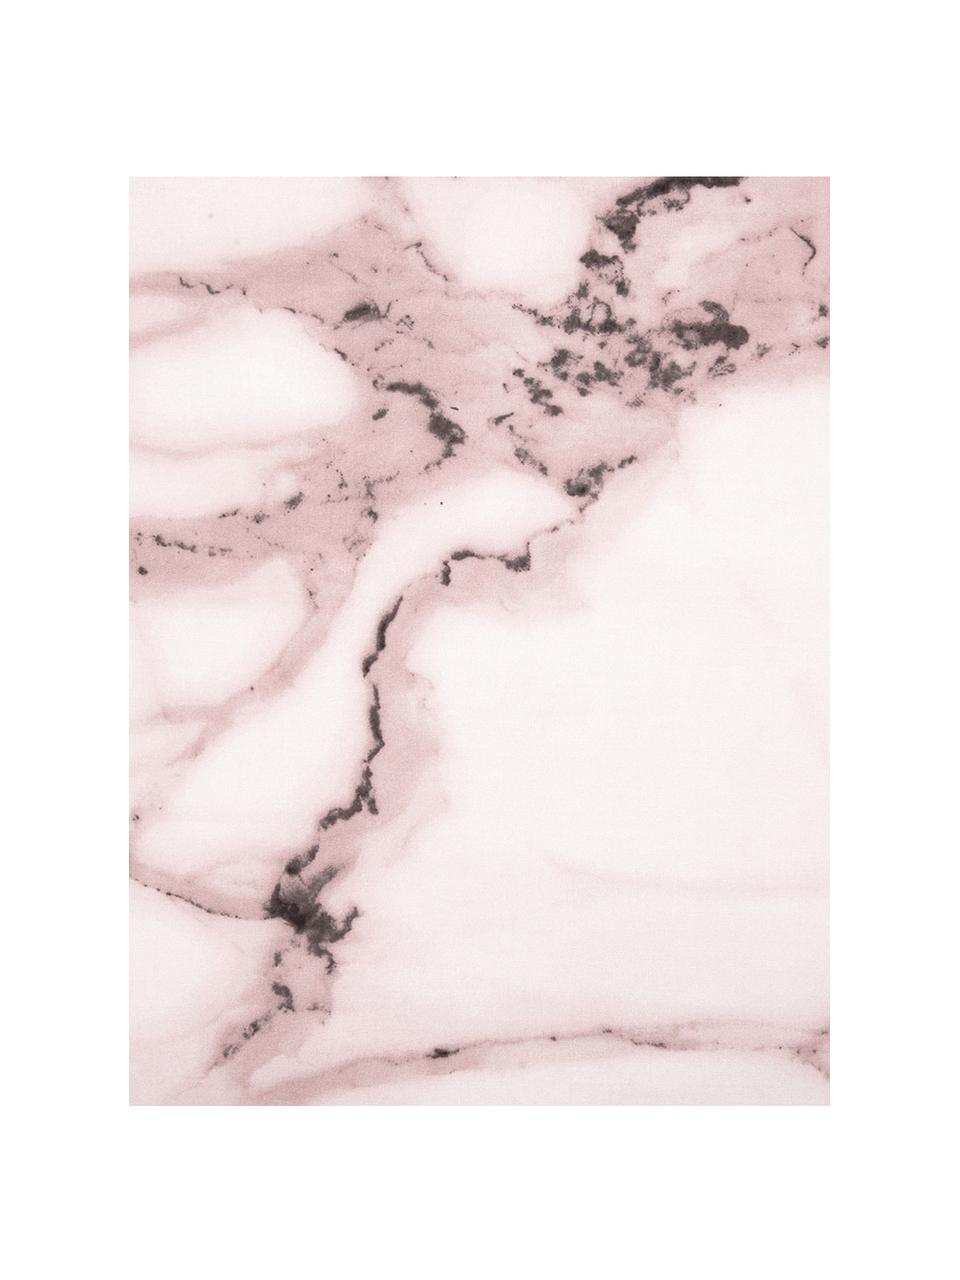 Poszewka na poduszkę z perkalu Malin, 2 szt., Przód: wzór marmurowy, blady różowy Tył: blady różowy, gładki, S 40 x D 80 cm